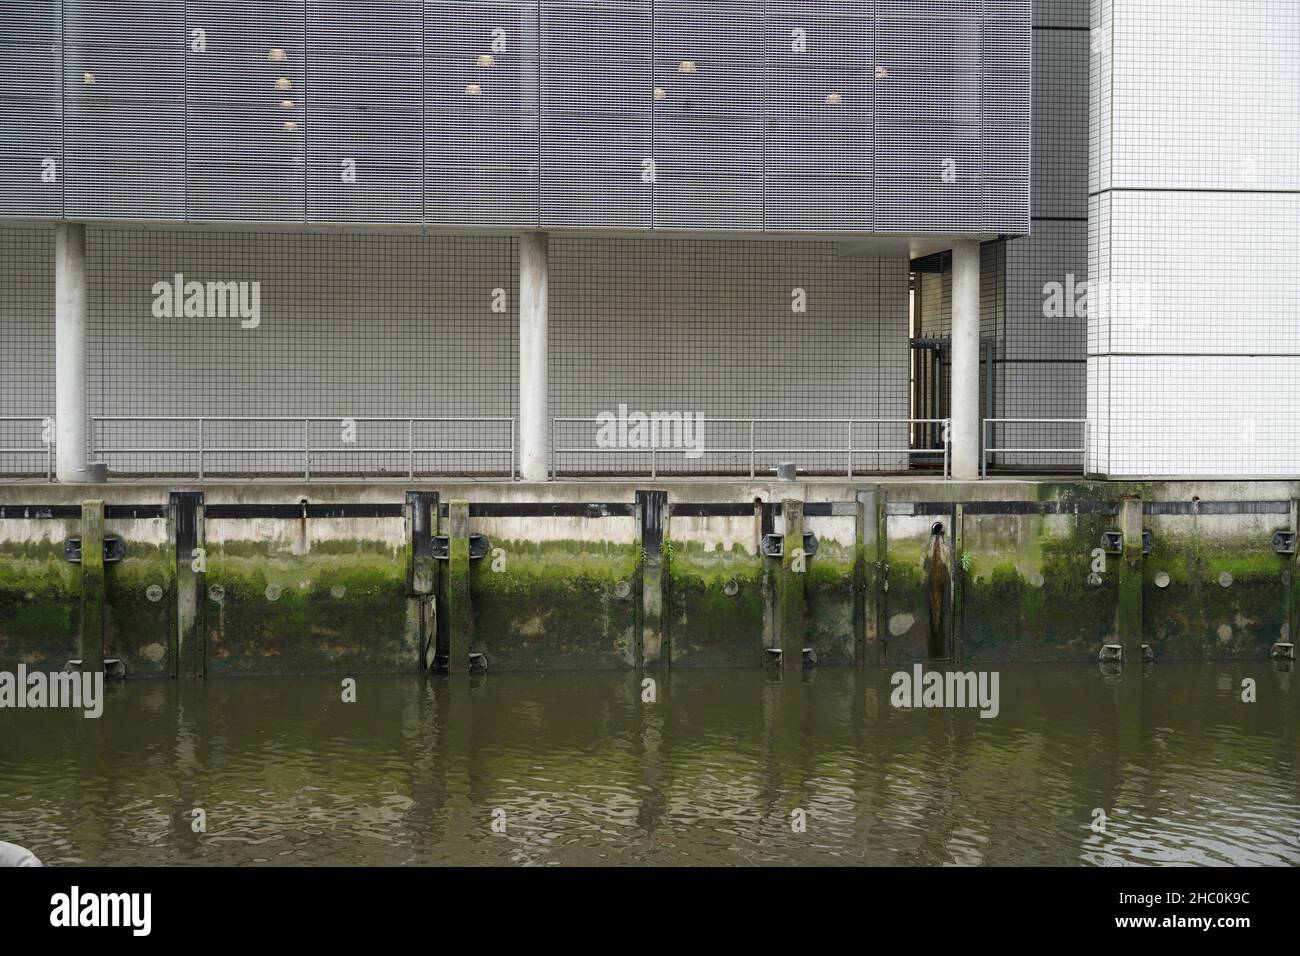 Edificio aziendale sopra un muro di cemento del lungofiume in un canale del fiume Nieuwe Maas a Rotterdam sovrastato da alghe verdi. Foto Stock